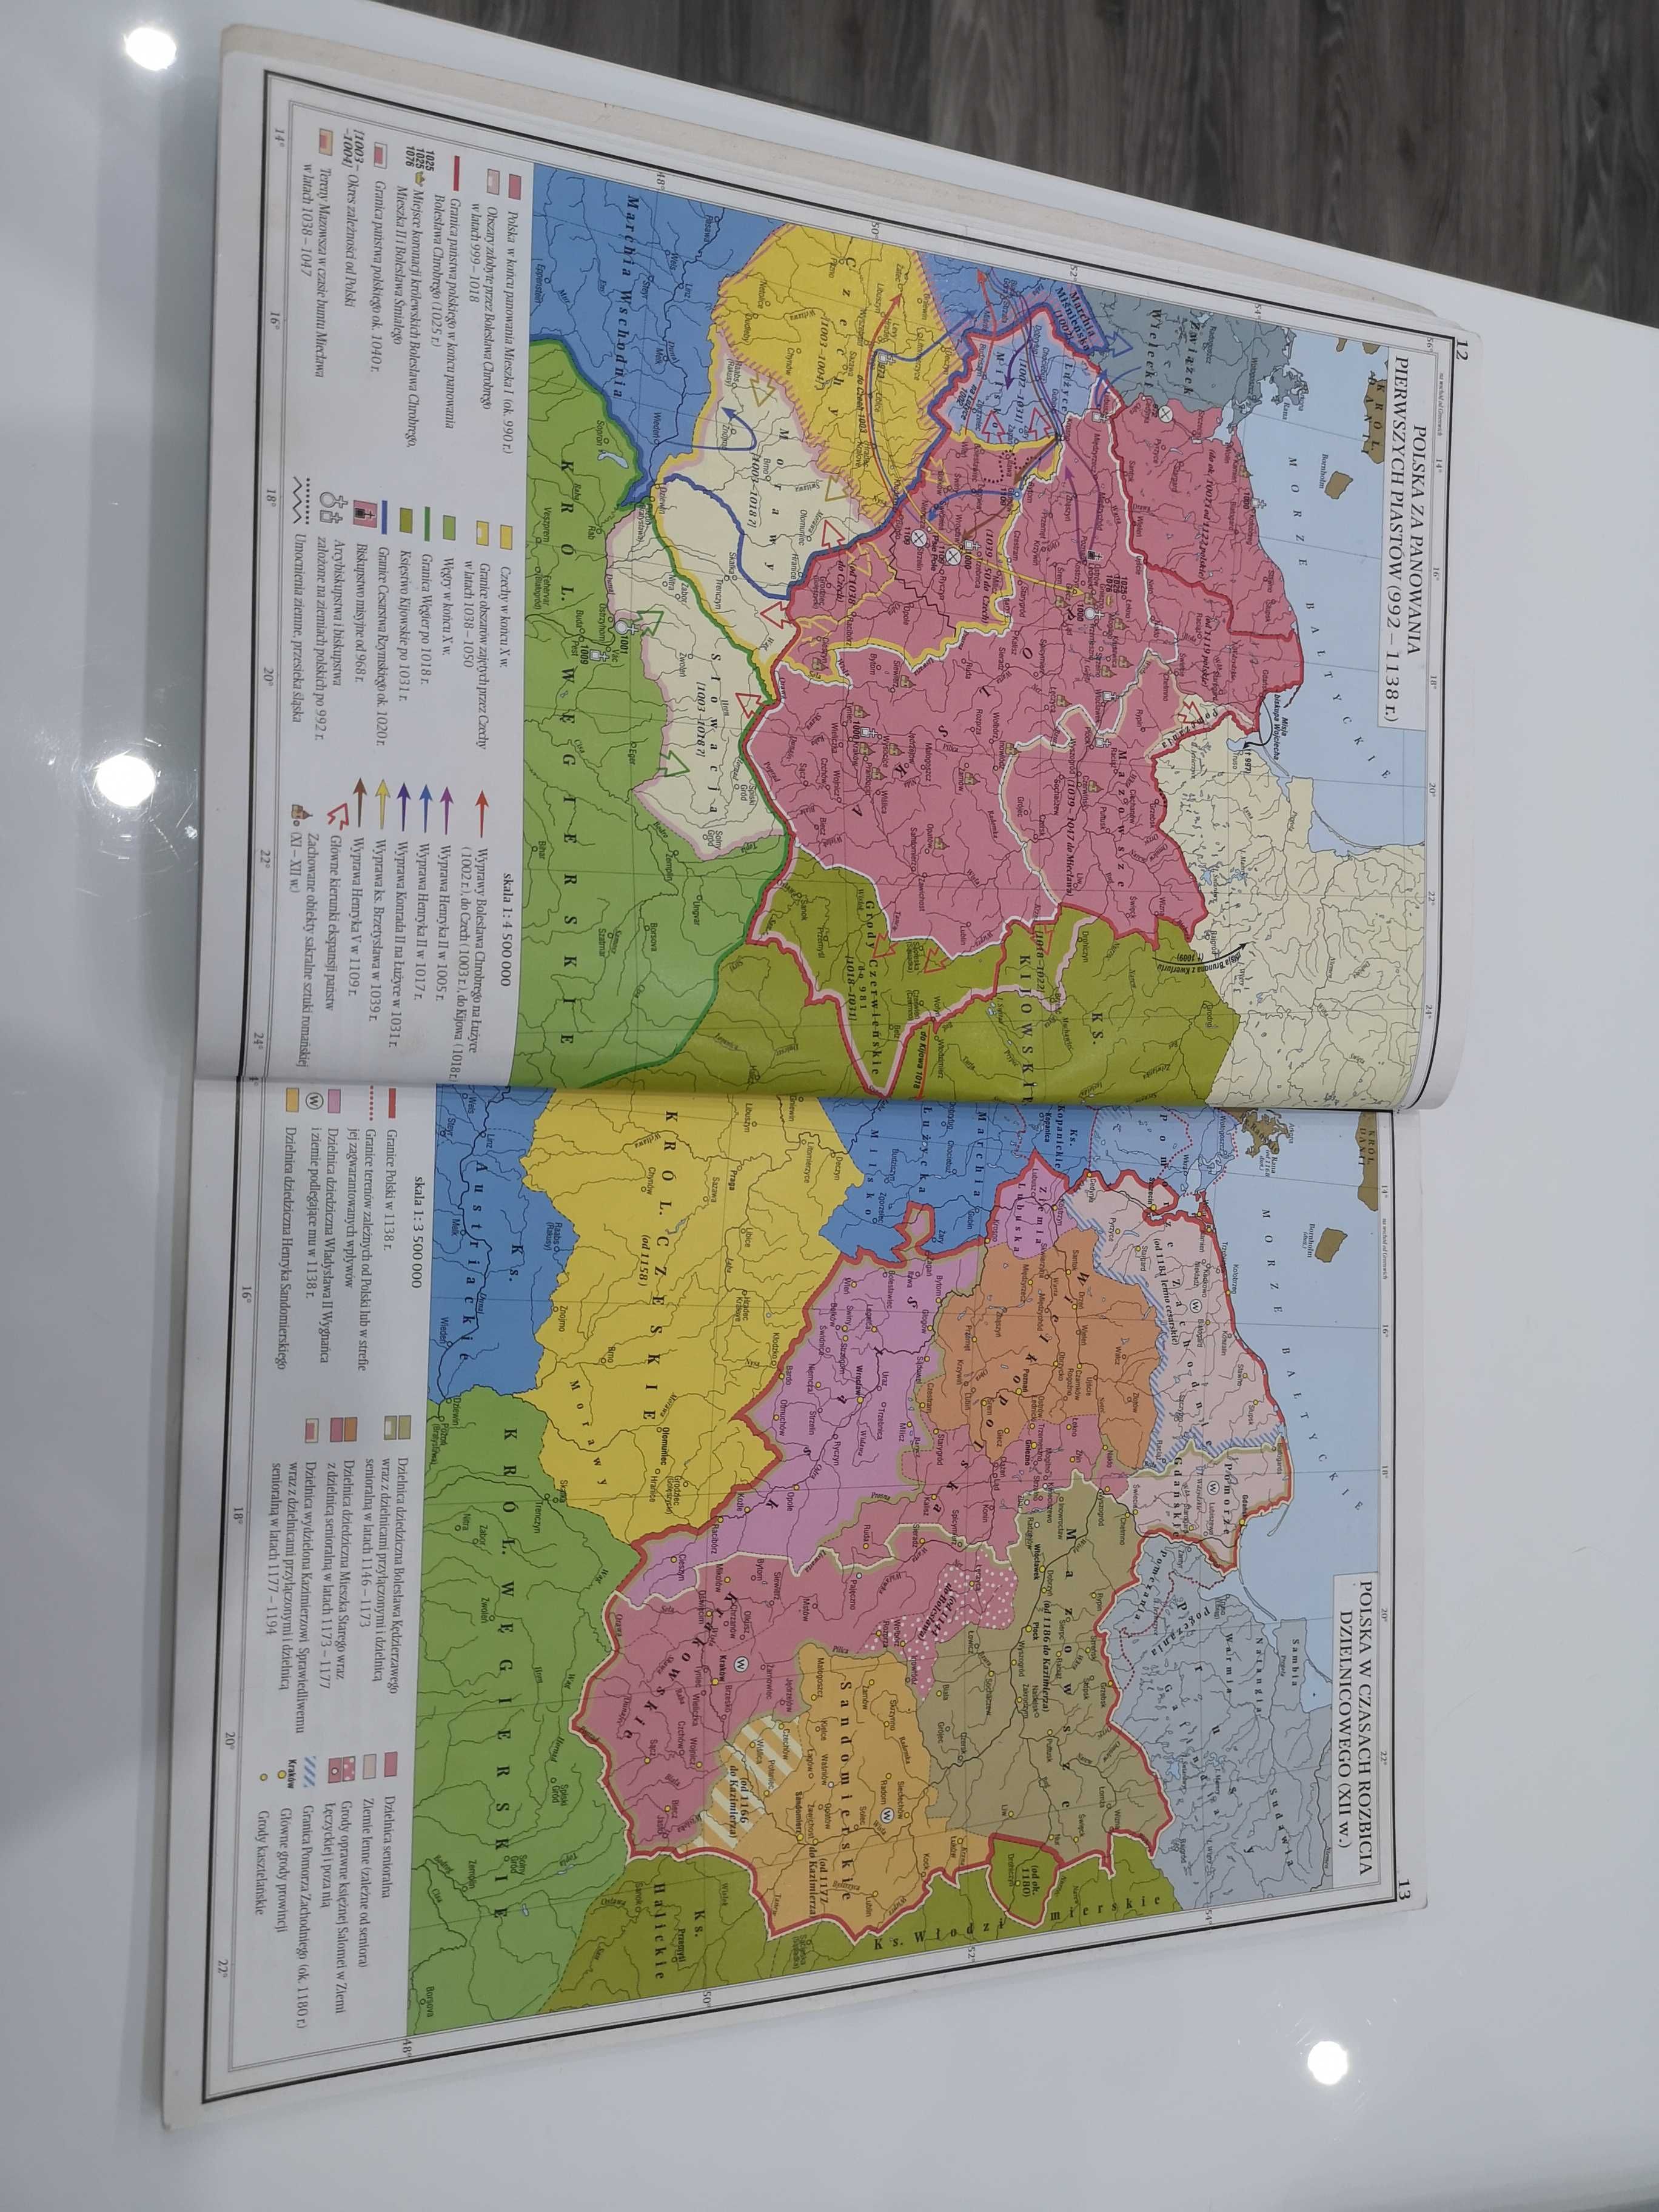 Atlas historyczny od starożytności do współczesności, Demart